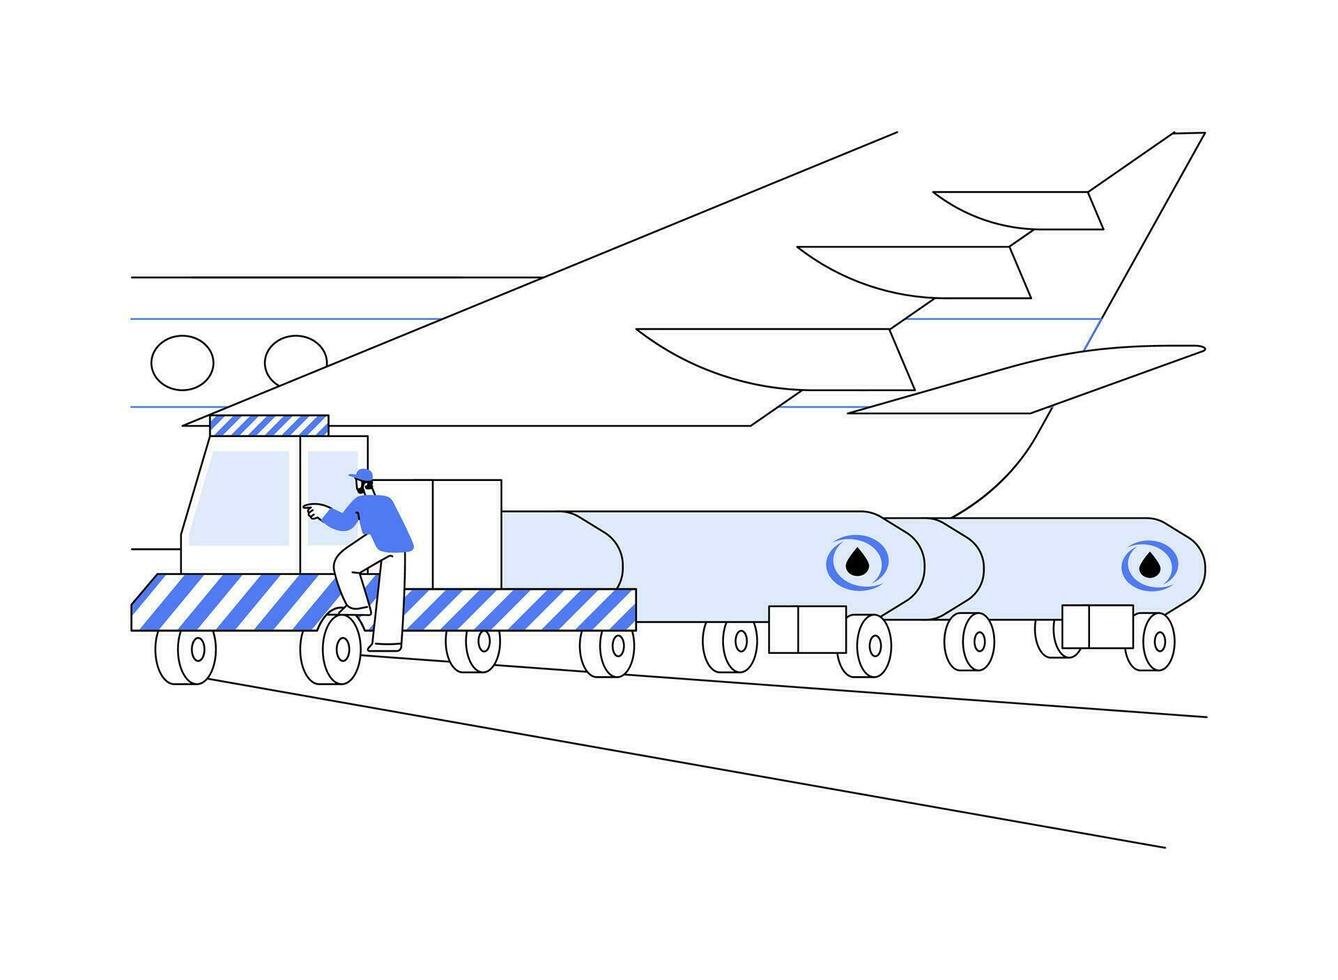 aeronave reabastecimento abstrato conceito vetor ilustração.